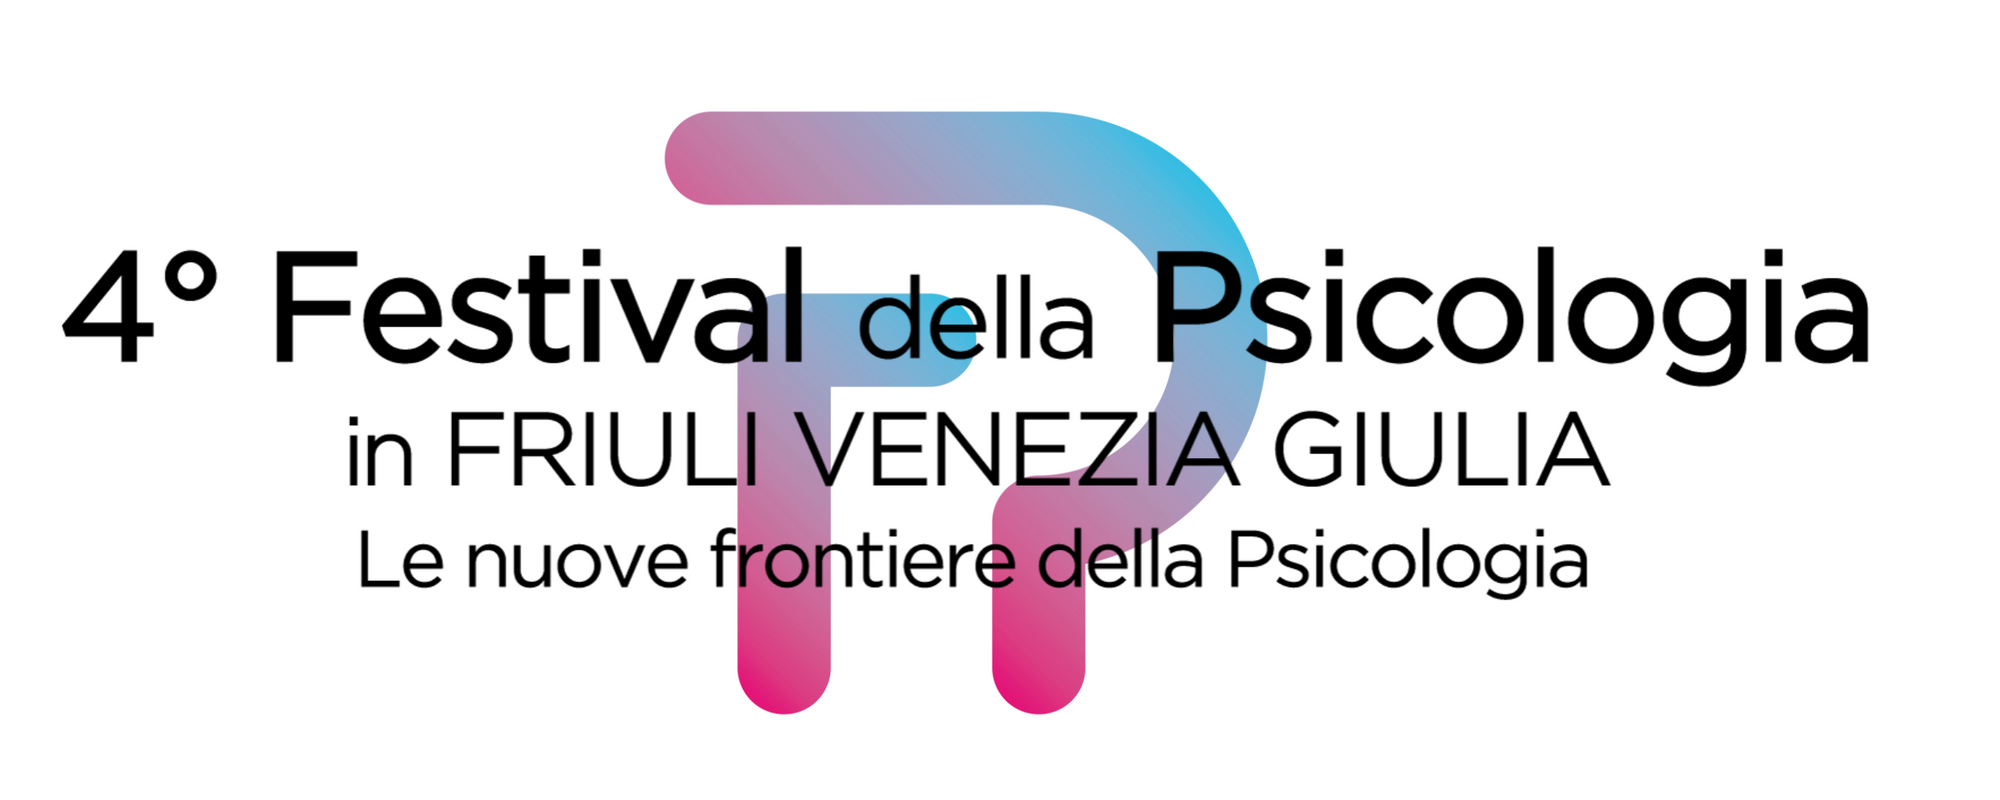 4° Festival della Psicologia in Friuli Venezia Giulia: dal 23 febbraio al 29 marzo. / Fino al 1° febbraio sono aperte le iscrizioni al PREMIO RICERCHE INNOVATIVE